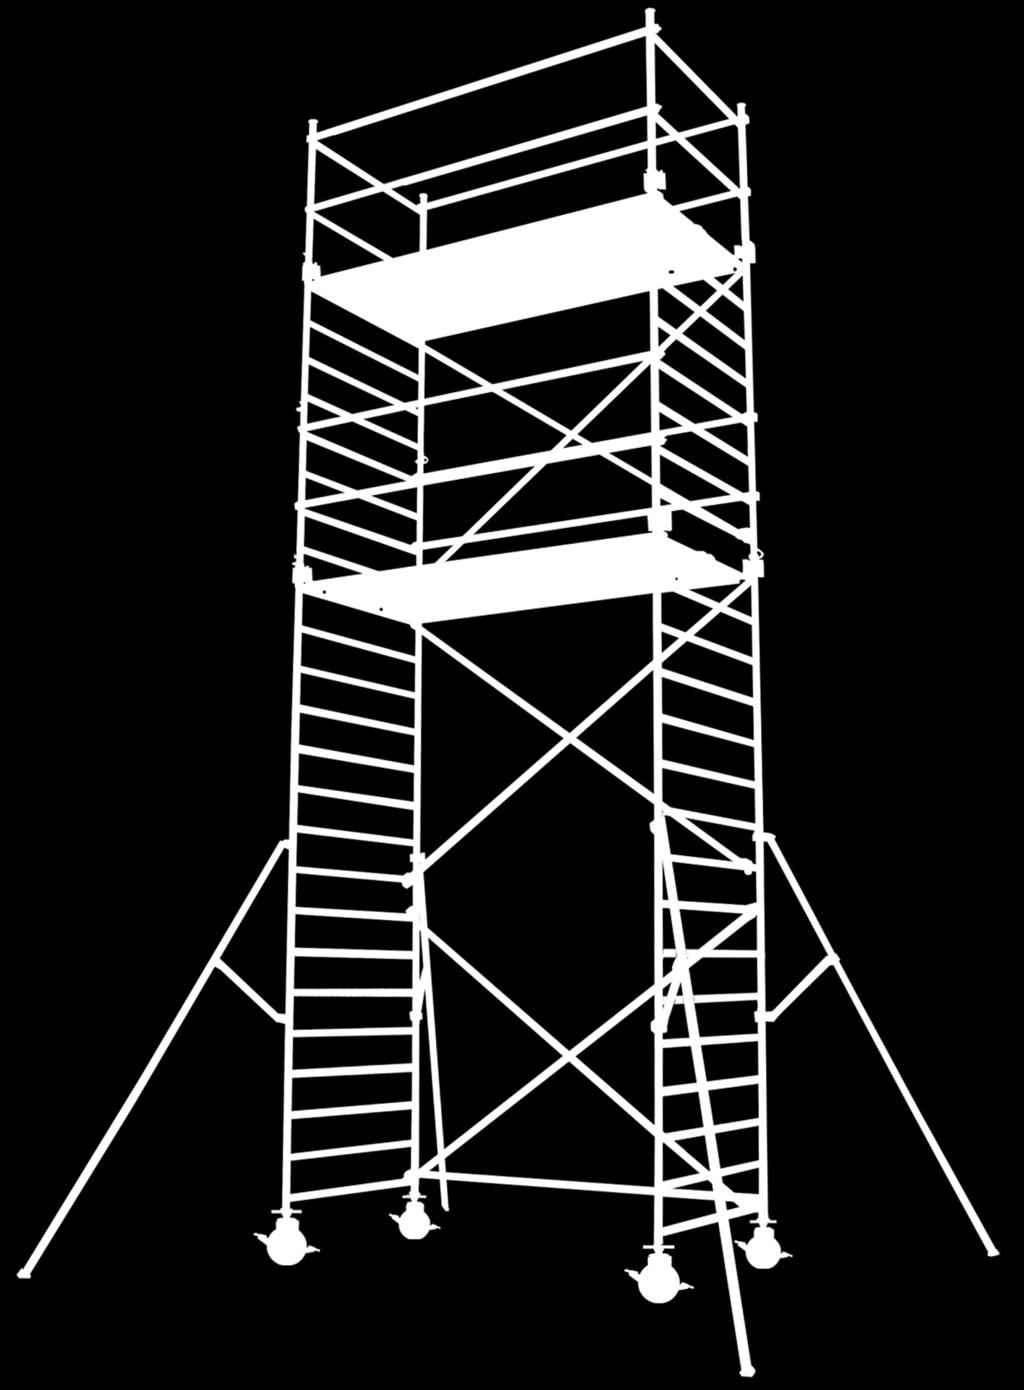 Pracovní plošina Rám zábradlí Držák podlážky -výklopná -pevná Pracoví výška a výška podlážky 2 metry pracovní výška Umístění stabilizačních vzpěr Střední část 2 m rám s příčkami Diagonální příčka